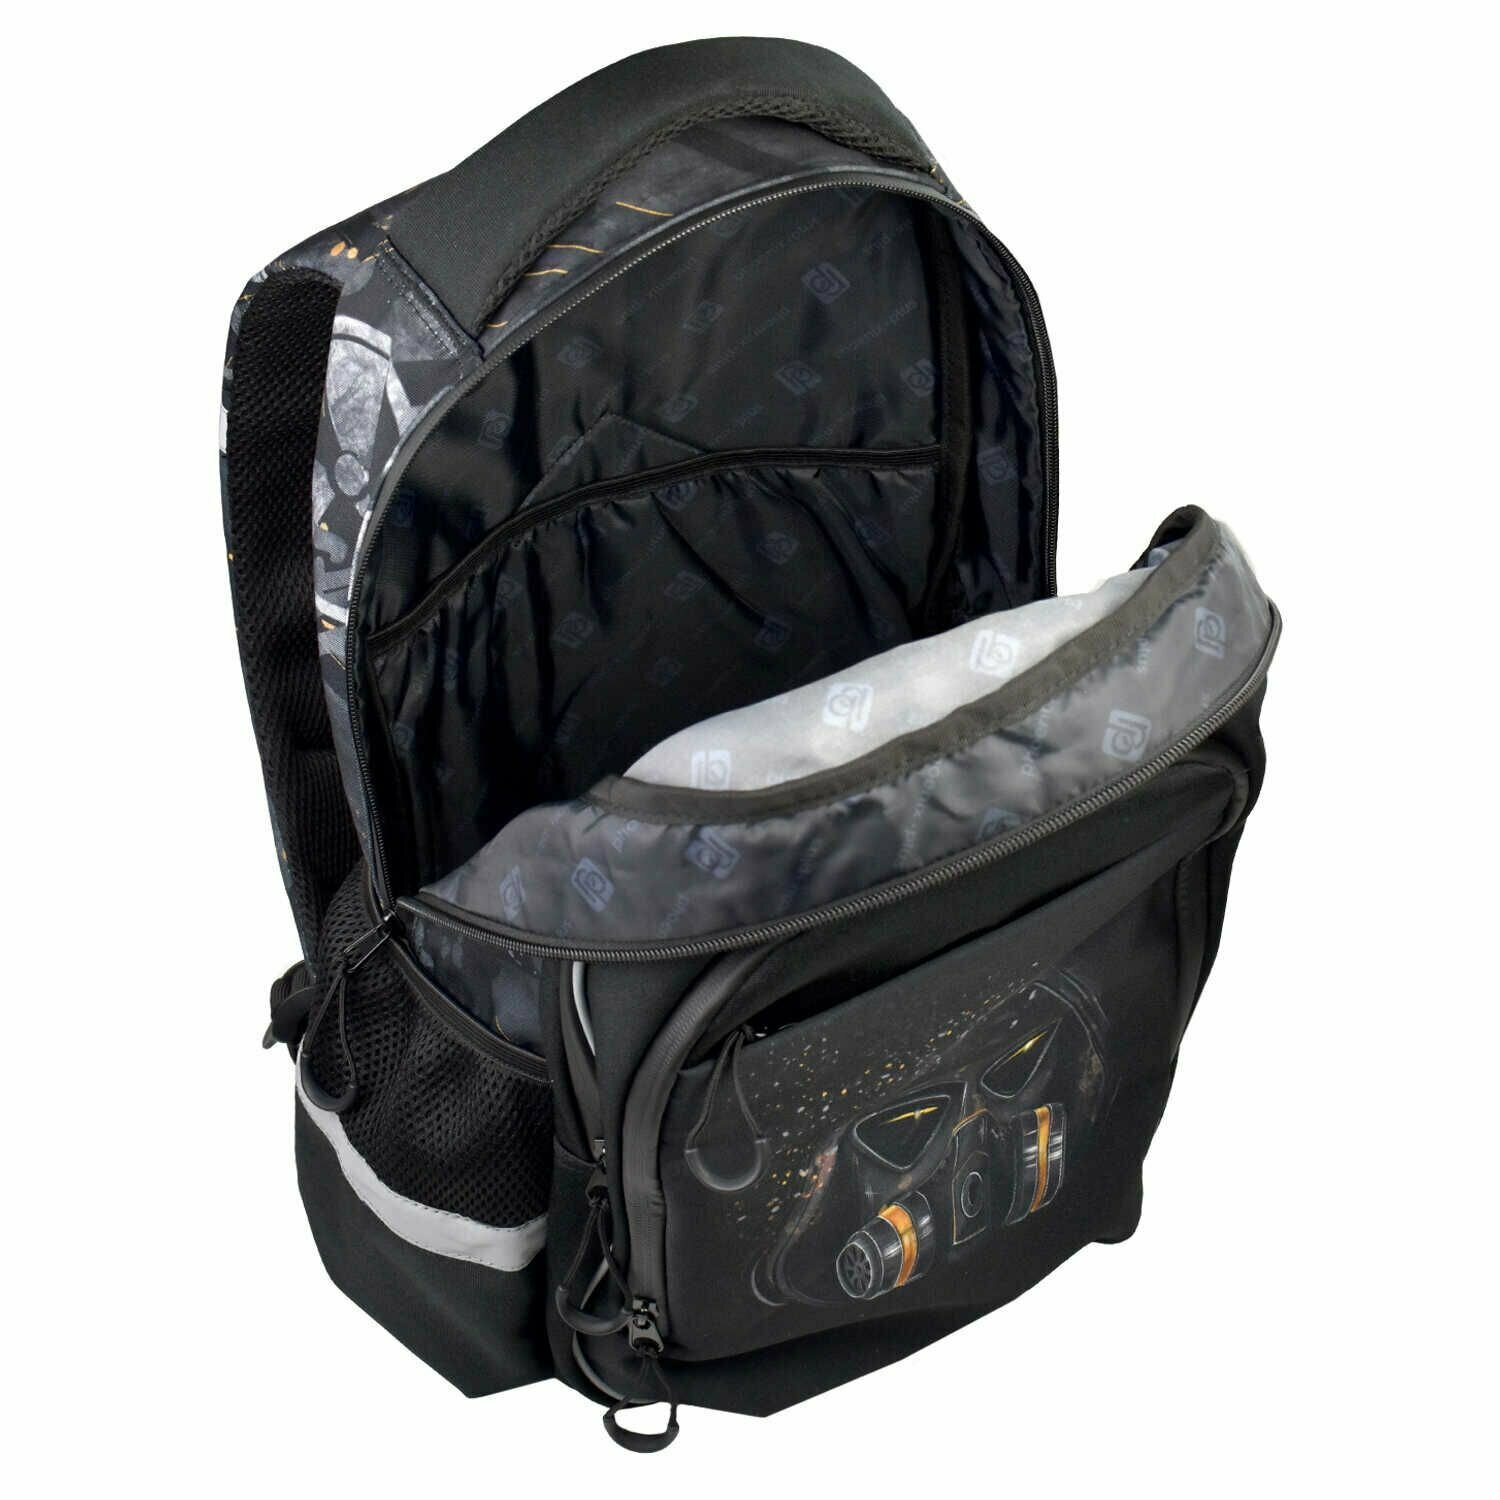 Рюкзак школьный Феникс+ "Темный райтер" 31*44*16см, 3 передних, 2 боковых кармана, уплотненная спинка